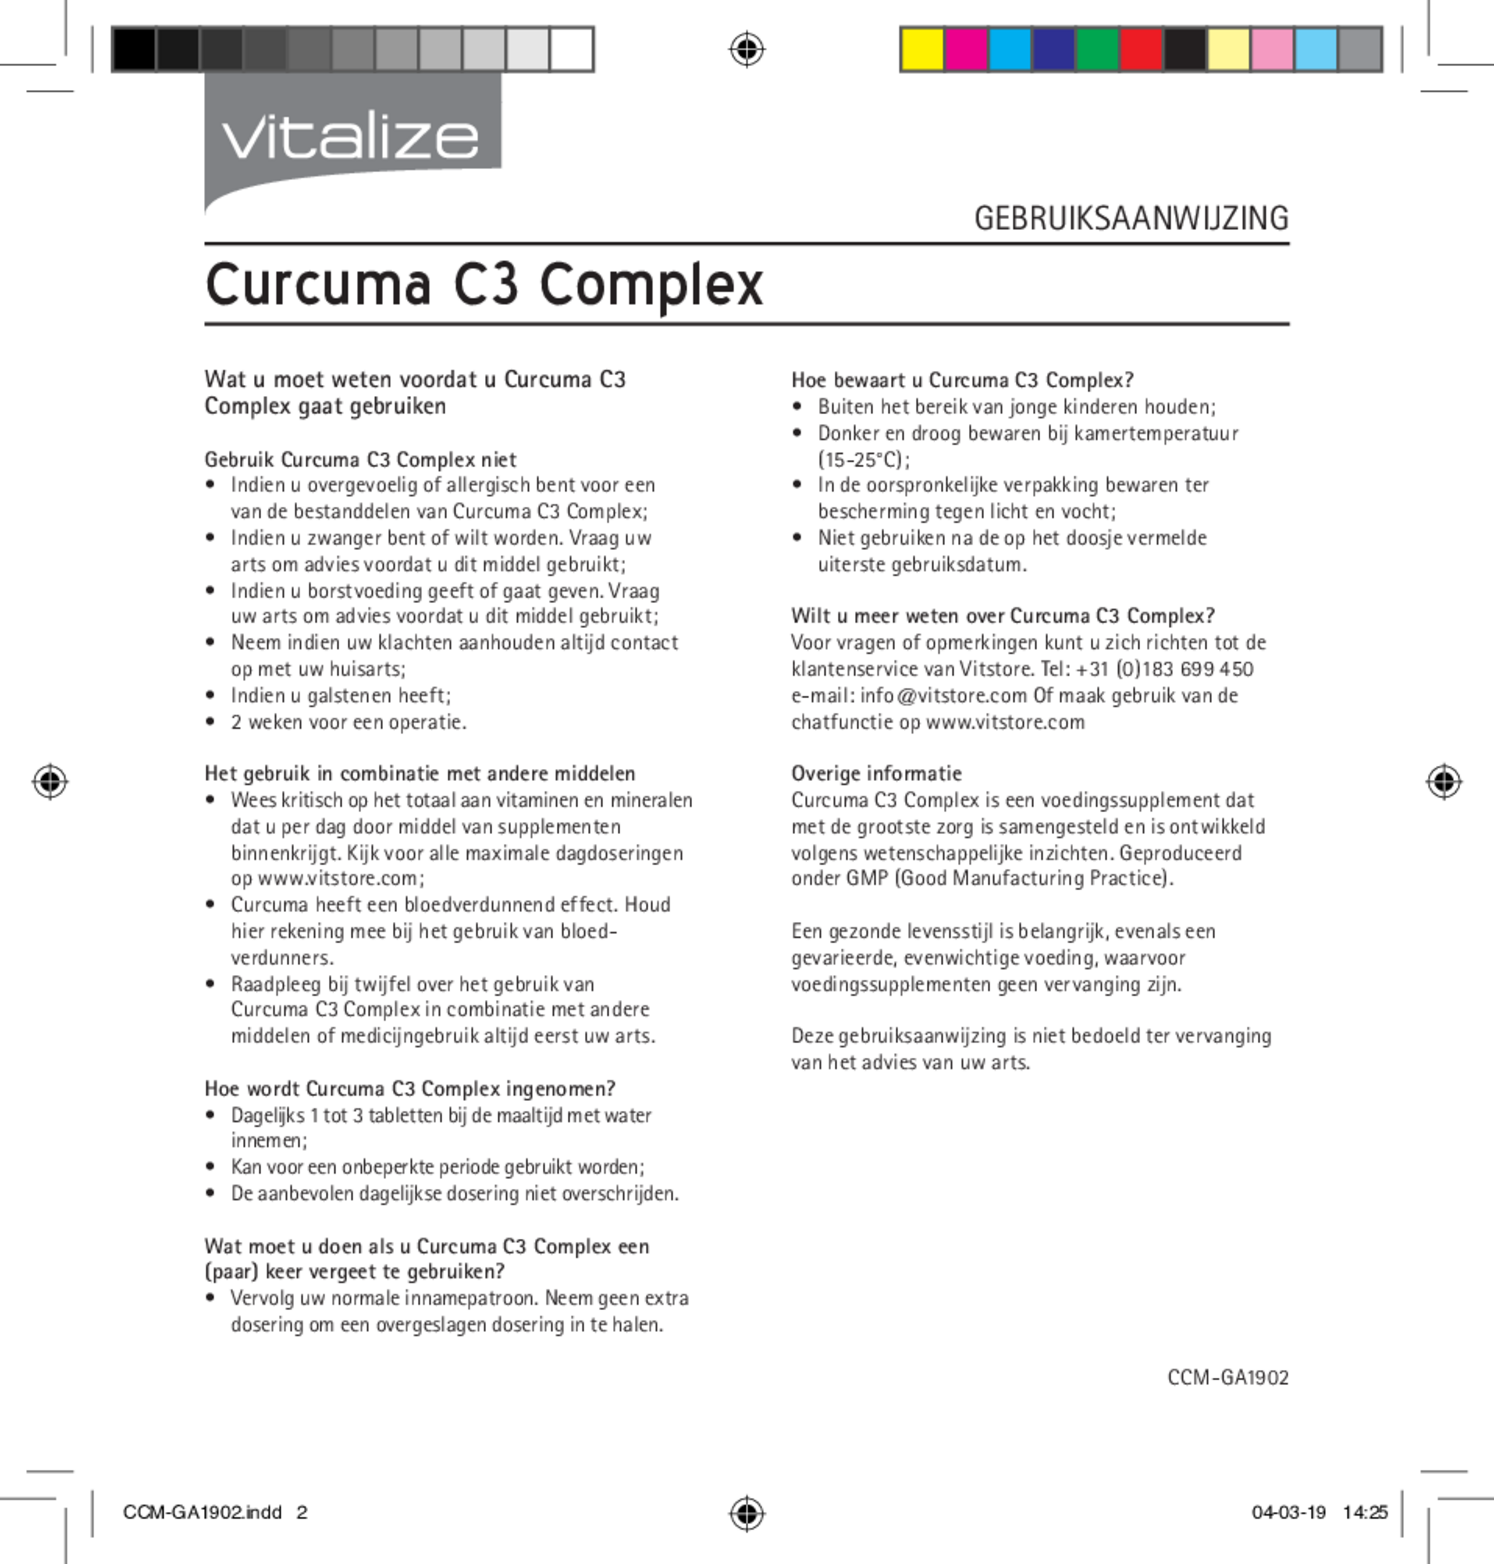 Curcuma C3 Complex Tabletten afbeelding van document #2, gebruiksaanwijzing